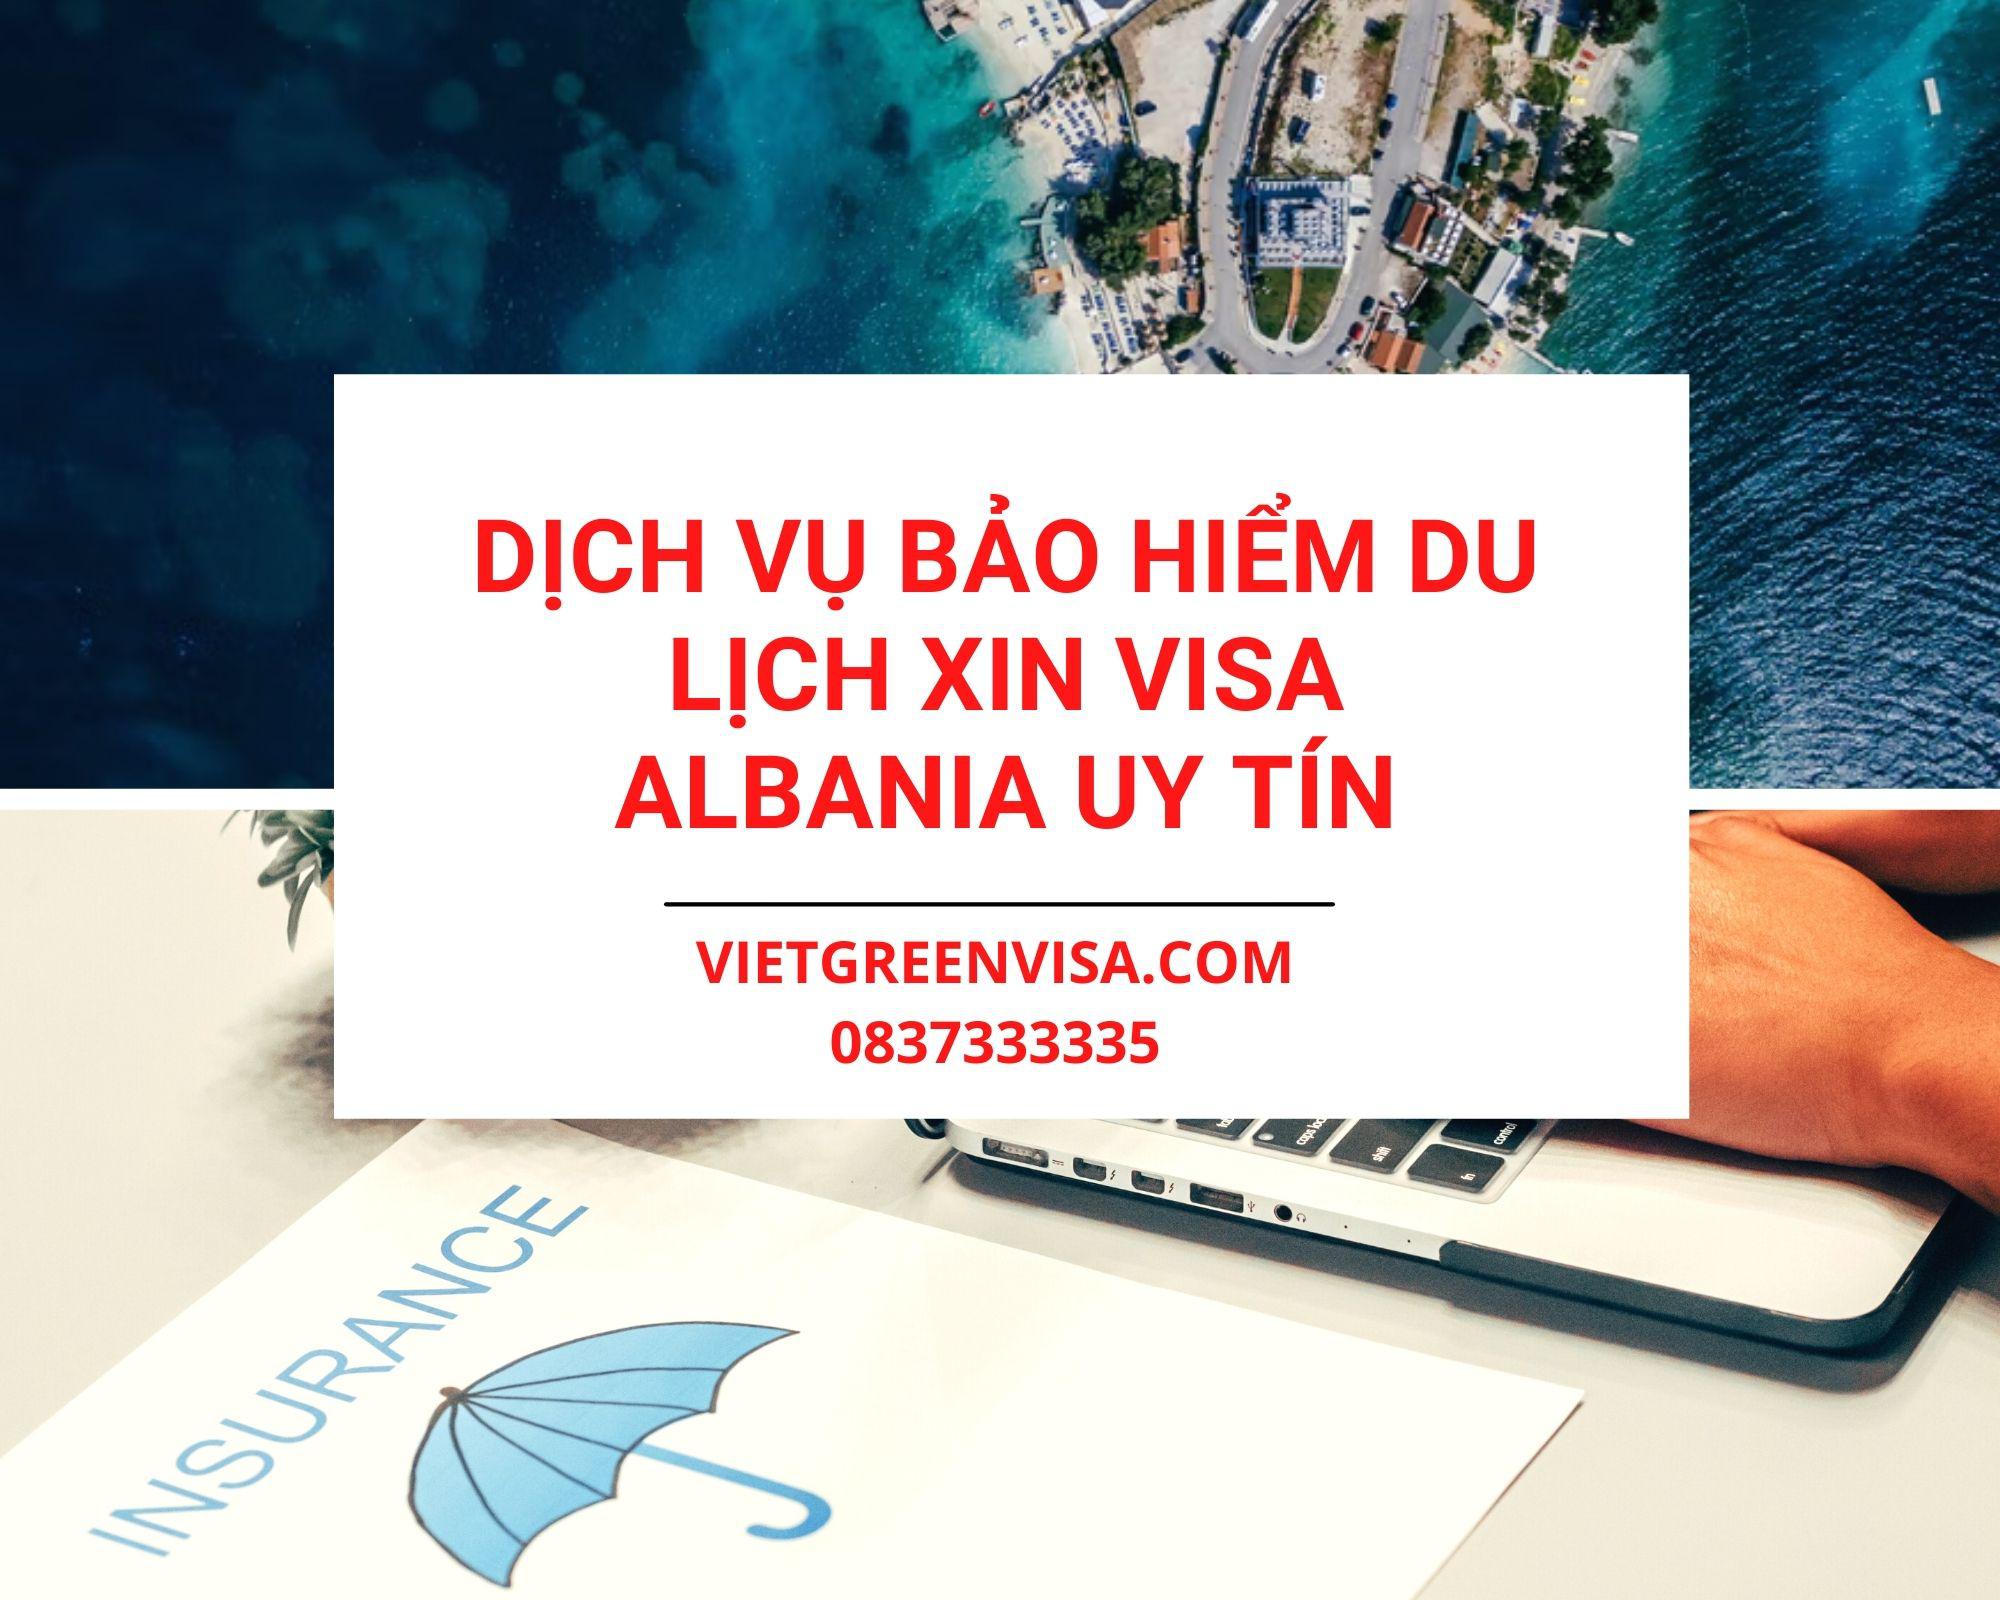 Dịch vụ bảo hiểm du lịch xin visa Albania uy tín